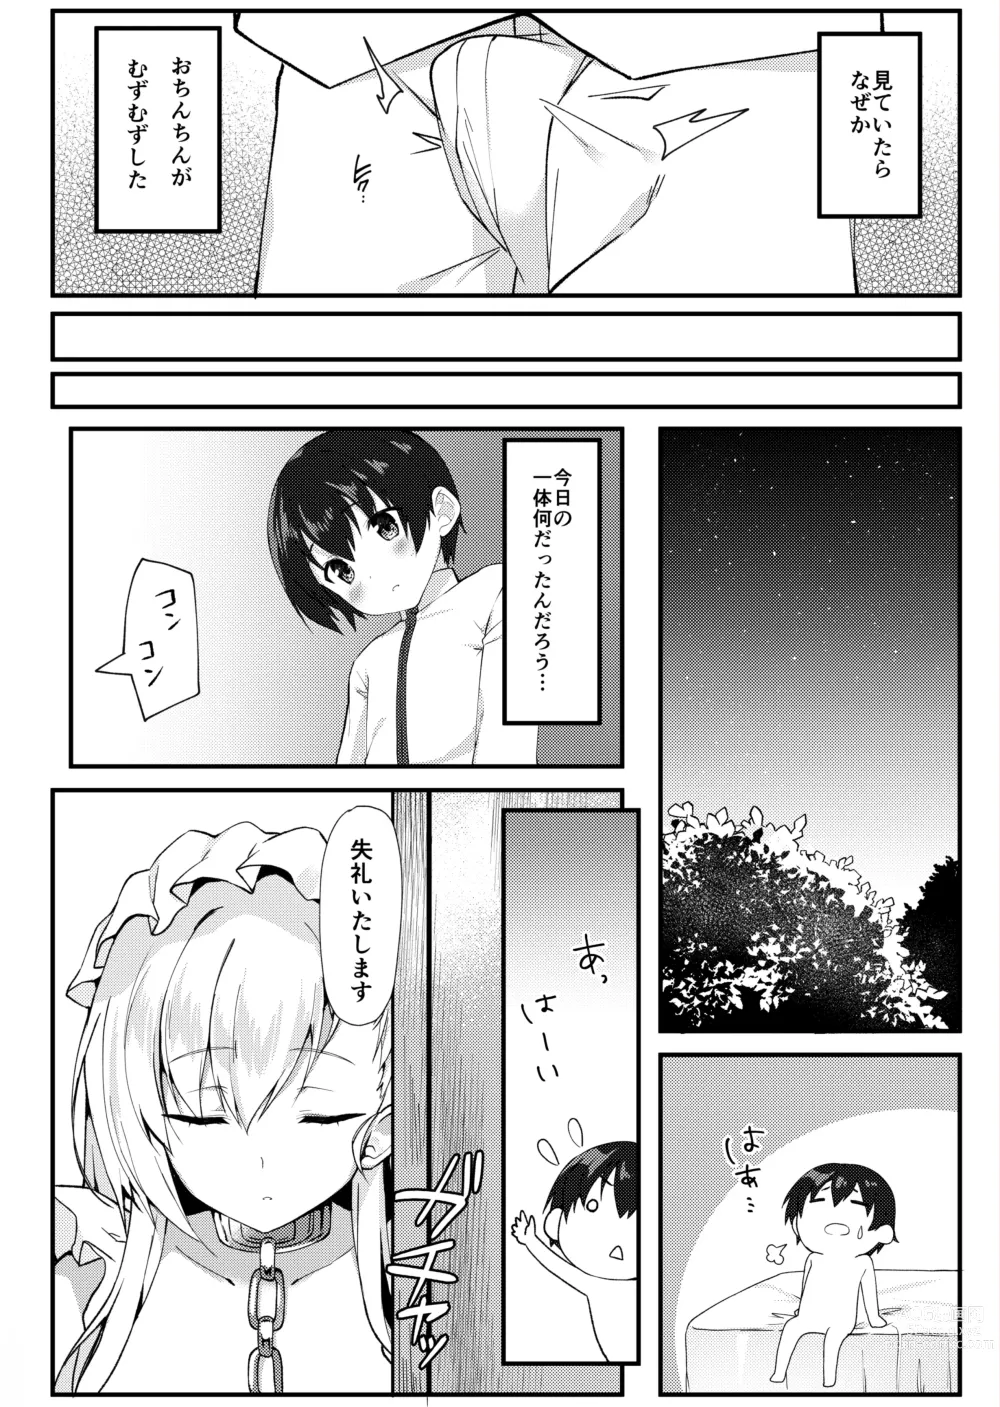 Page 5 of doujinshi Shota ga Tame ni Bel wa Naru